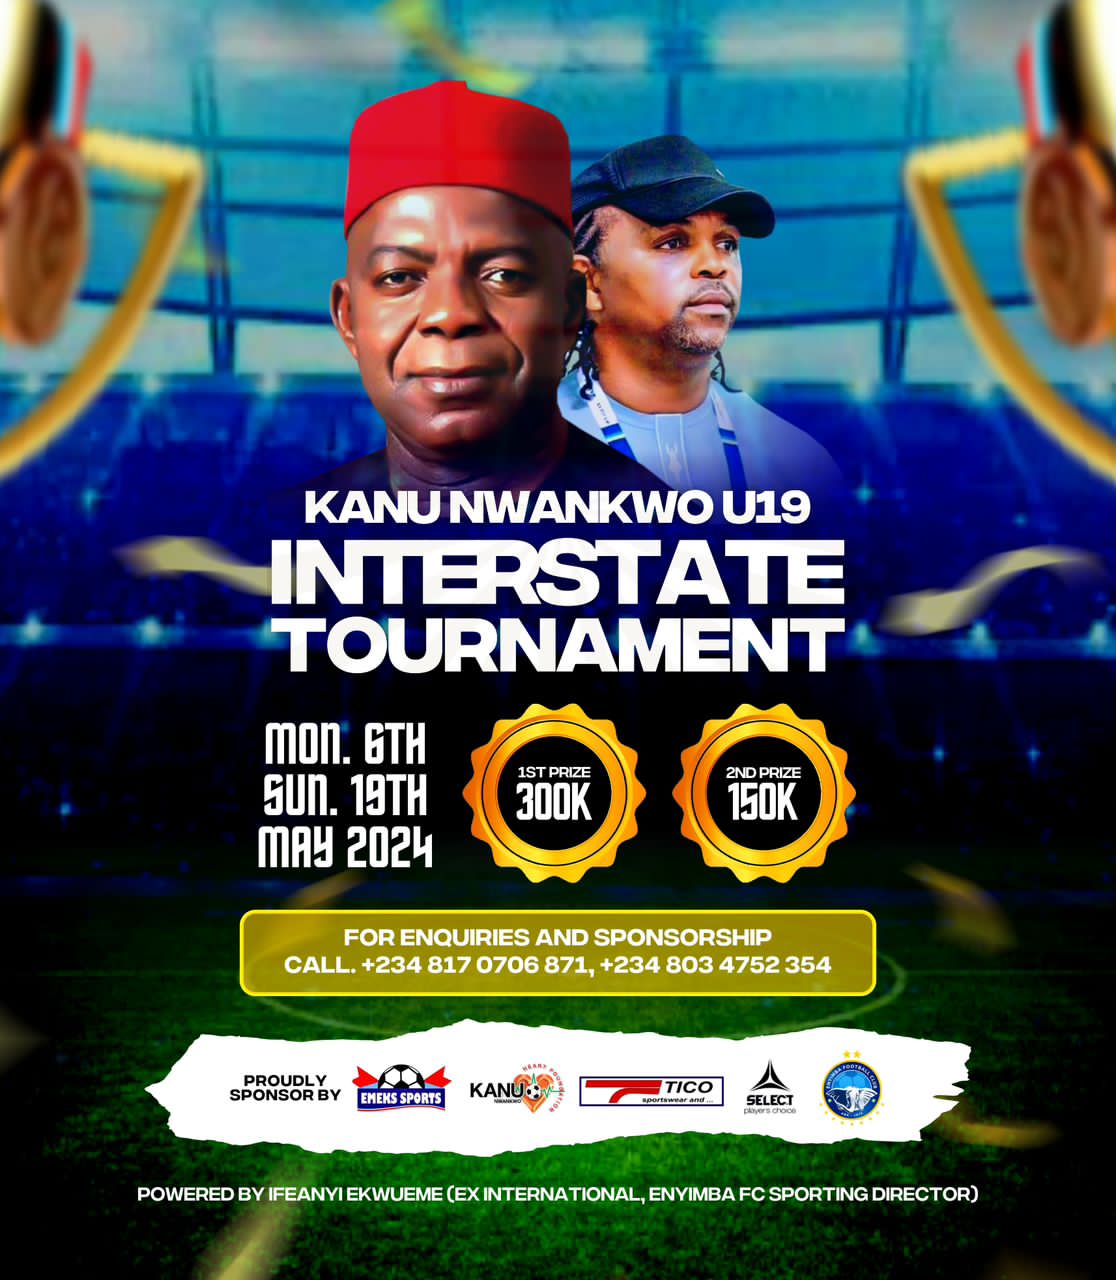 Kanu Nwankwo U19 Interstate Tournament Get Kickoff Date